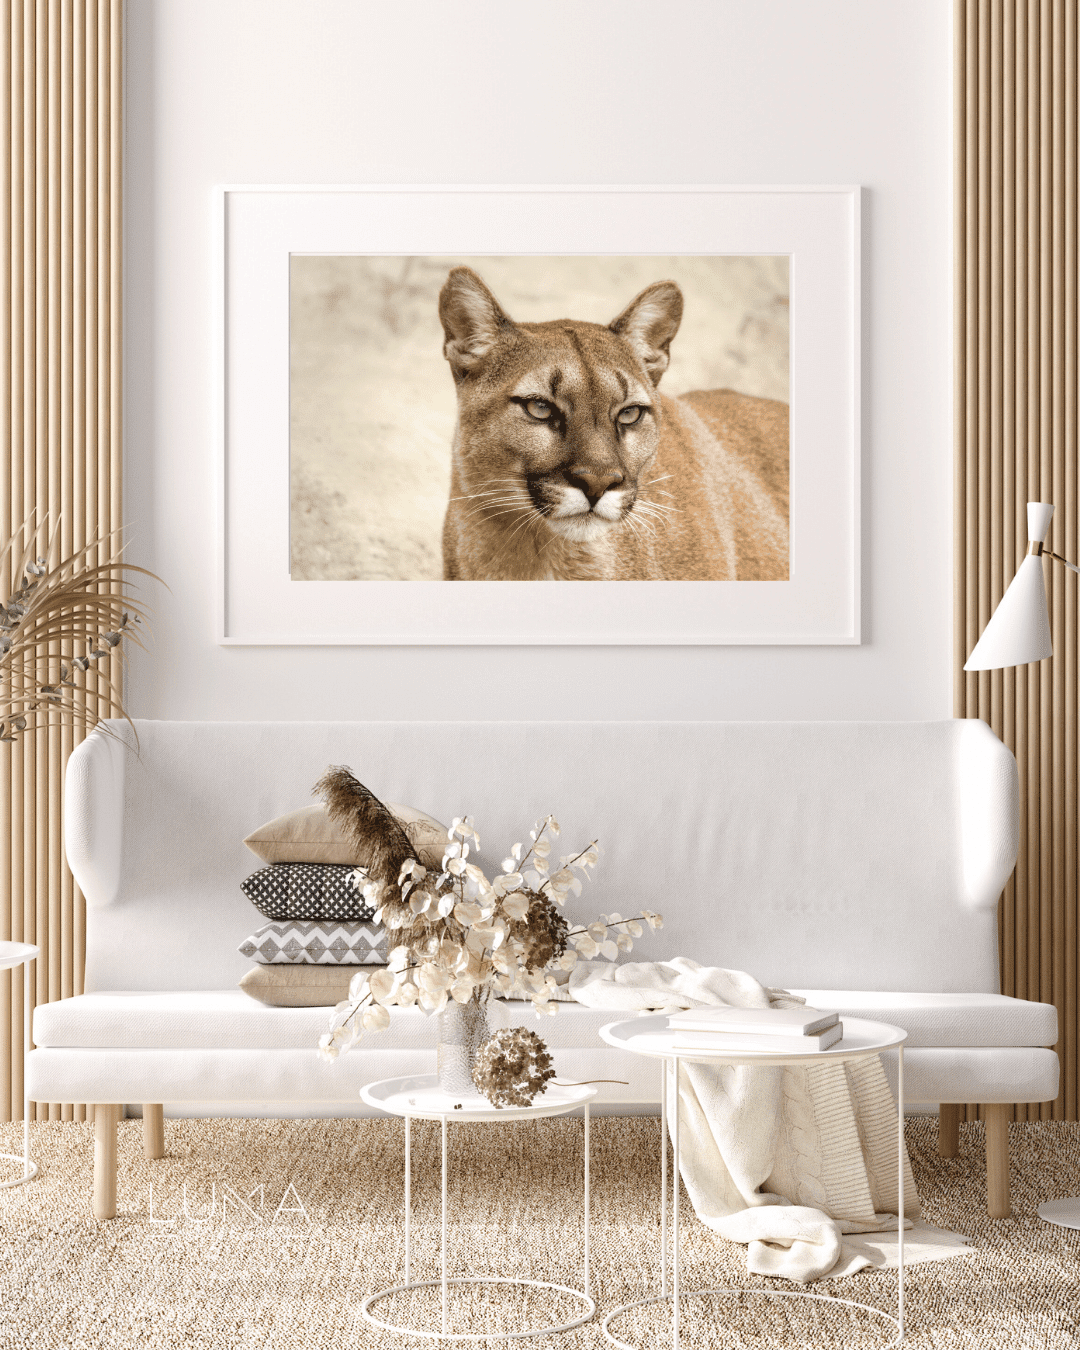 Classy Cougar Animal Artwork